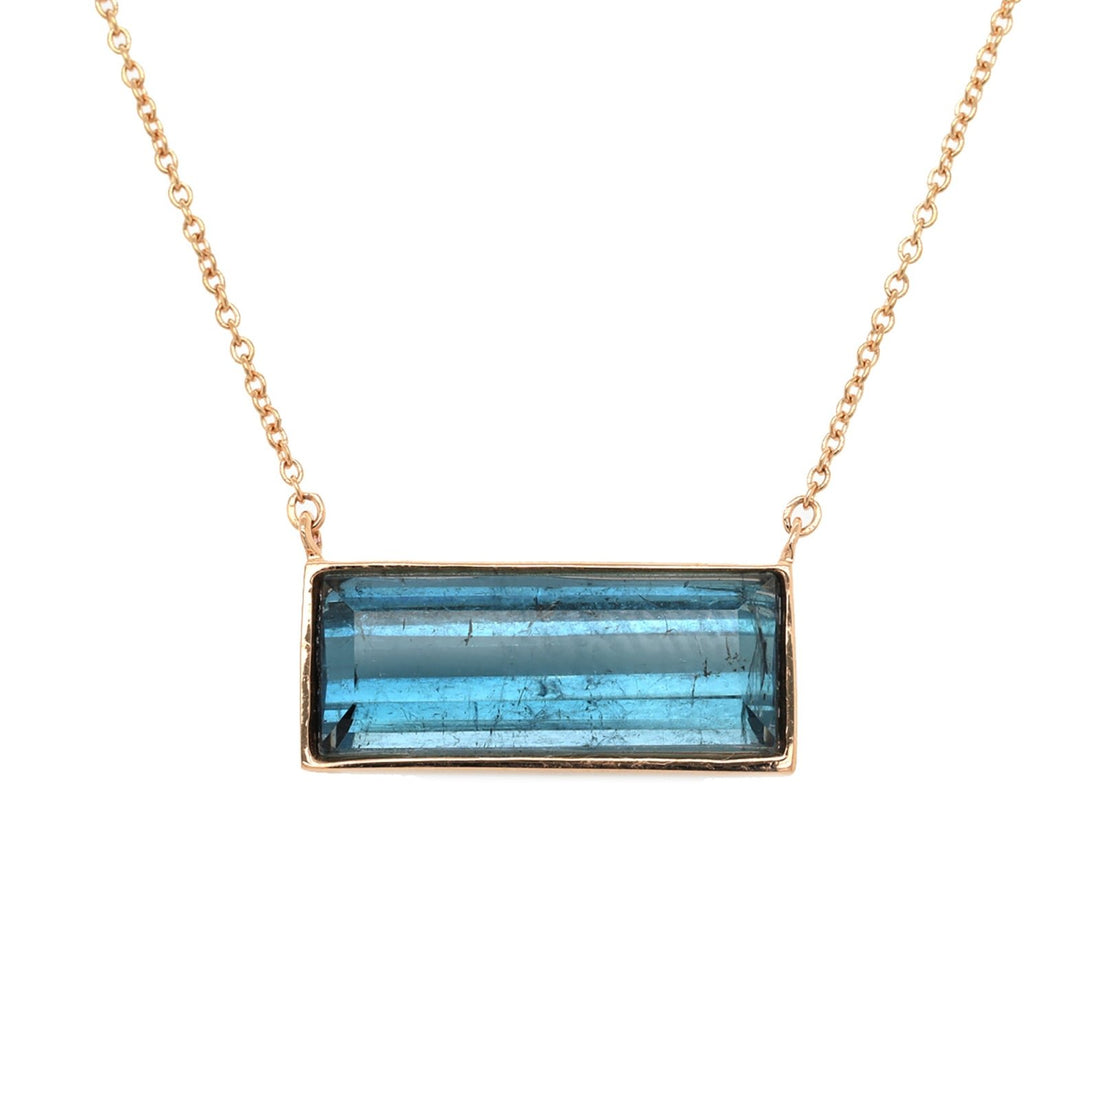 One of a Kind Blue Tourmaline Necklace - Ele Keats Jewelry